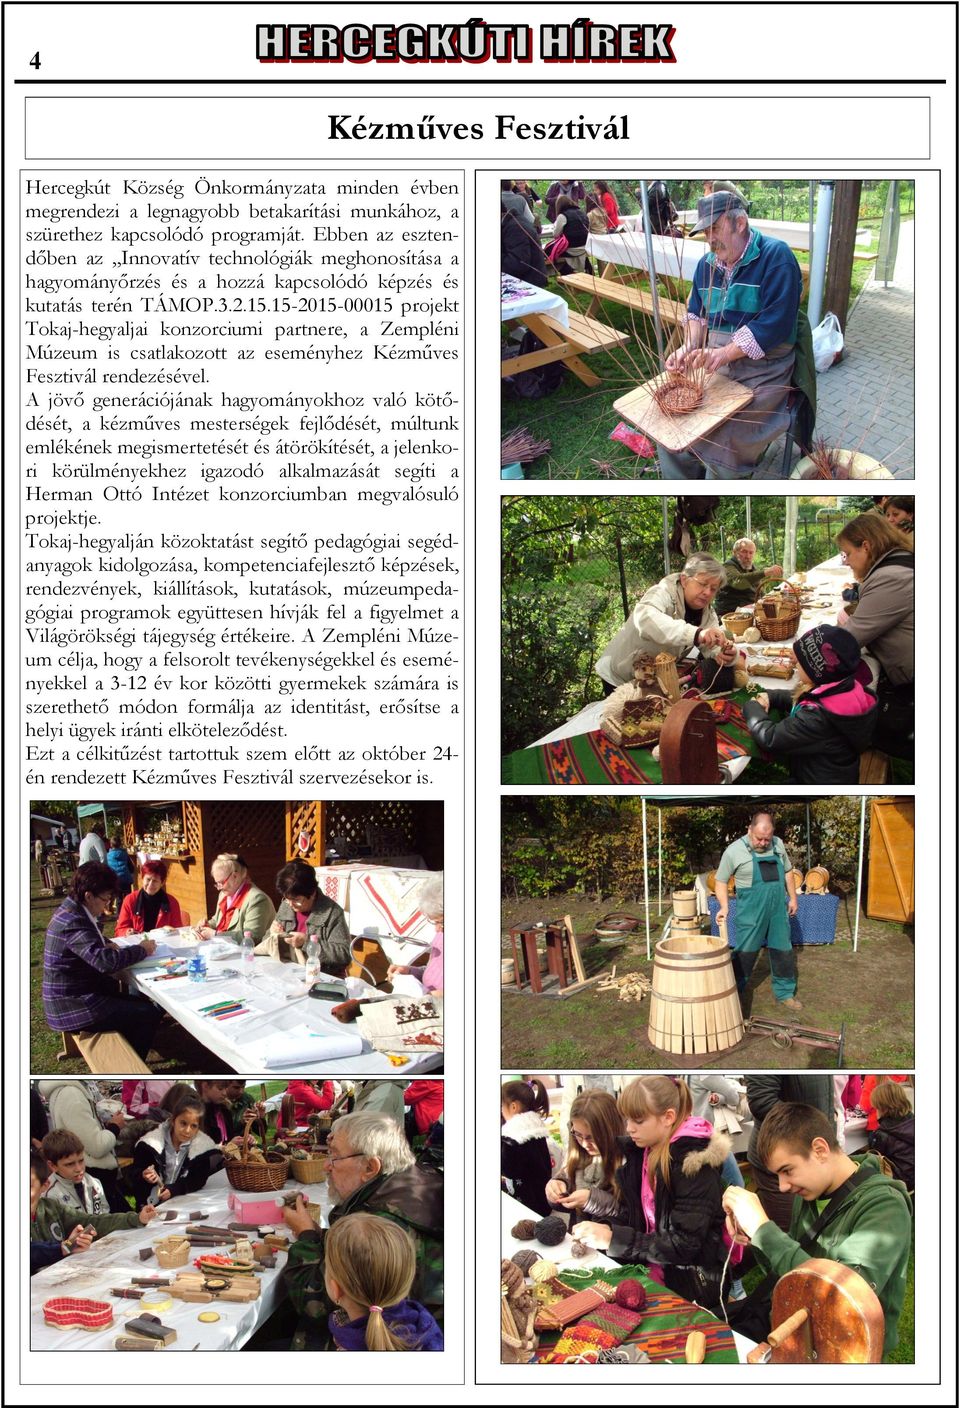 15-2015-00015 projekt Tokaj-hegyaljai konzorciumi partnere, a Zempléni Múzeum is csatlakozott az eseményhez Kézműves Fesztivál rendezésével.